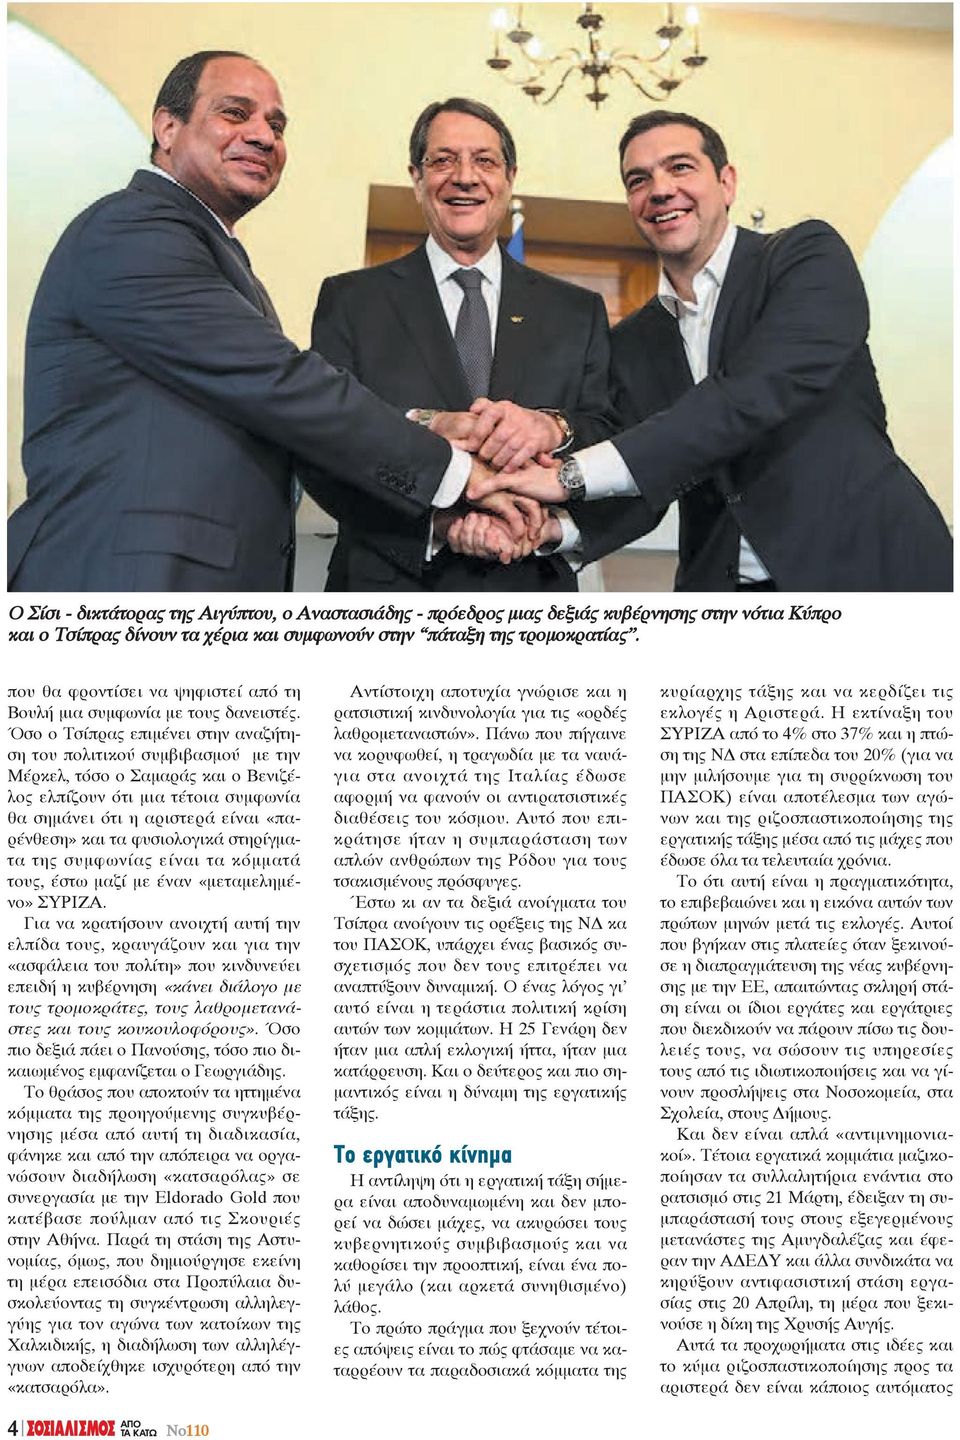 Όσο ο Τσίπρας επιμένει στην αναζήτηση του πολιτικού συμβιβασμού με την Μέρκελ, τόσο ο Σαμαράς και ο Βενιζέλος ελπίζουν ότι μια τέτοια συμφωνία θα σημάνει ότι η αριστερά είναι «παρένθεση» και τα